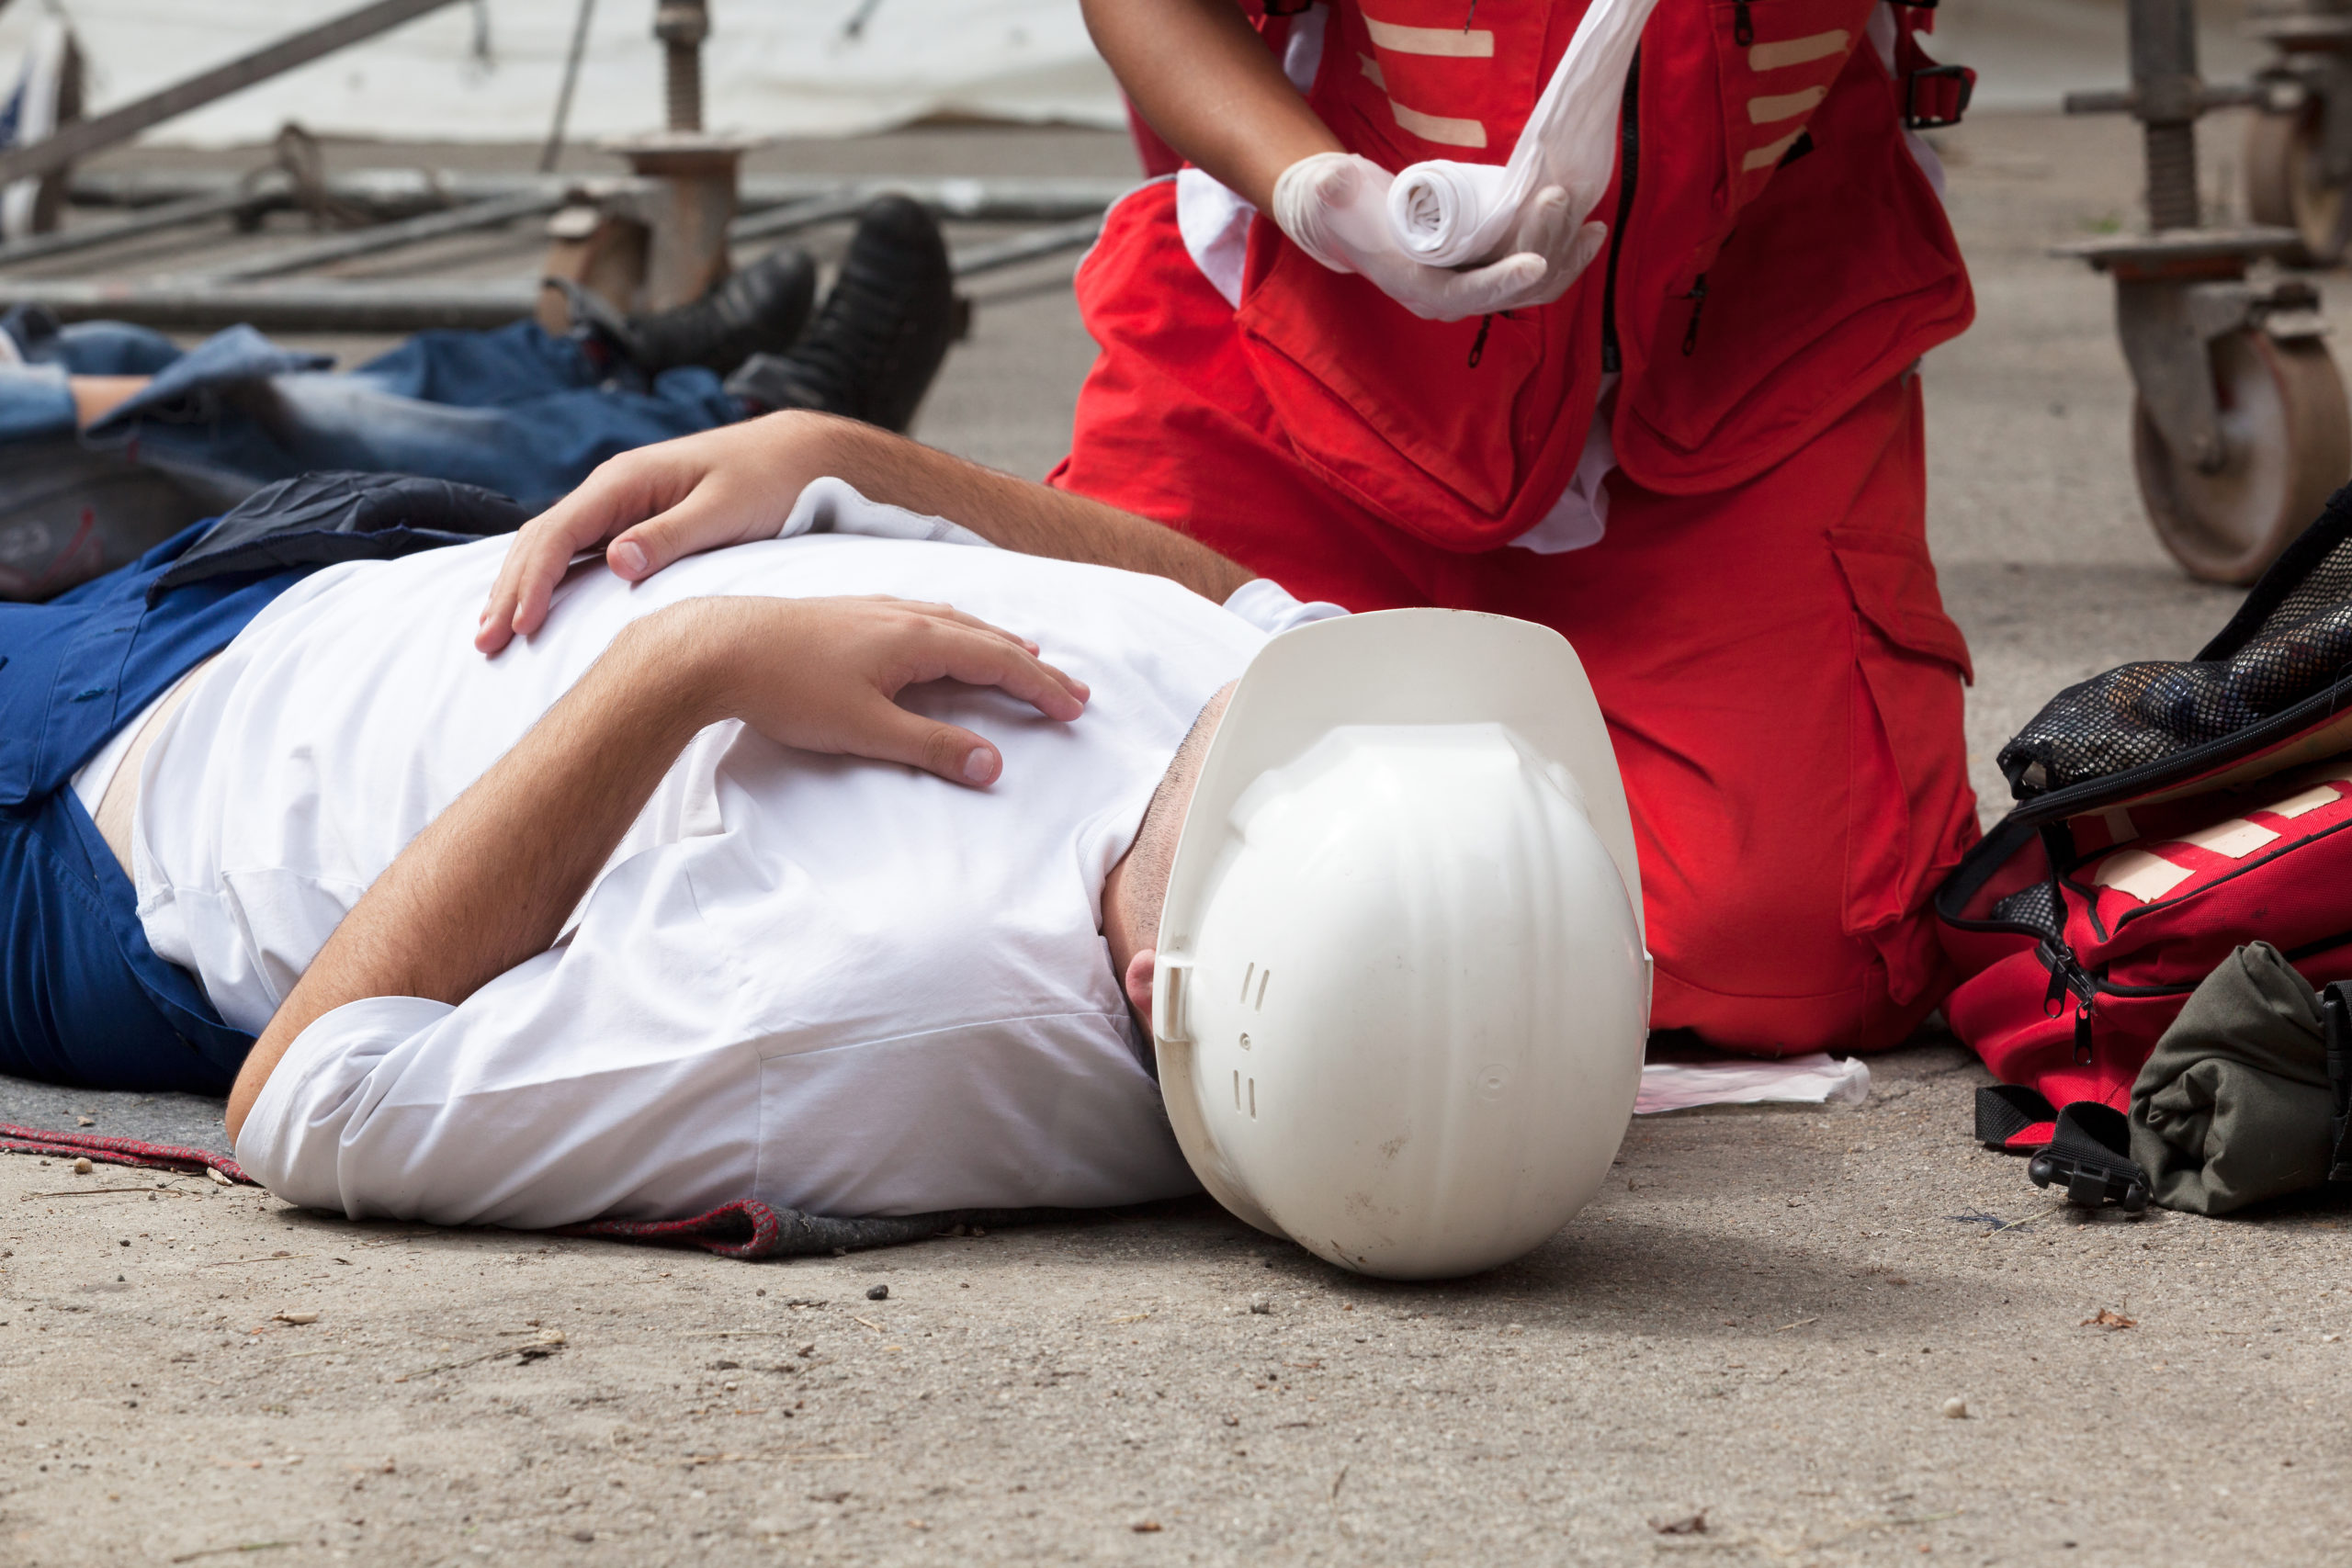 emergency first aid training